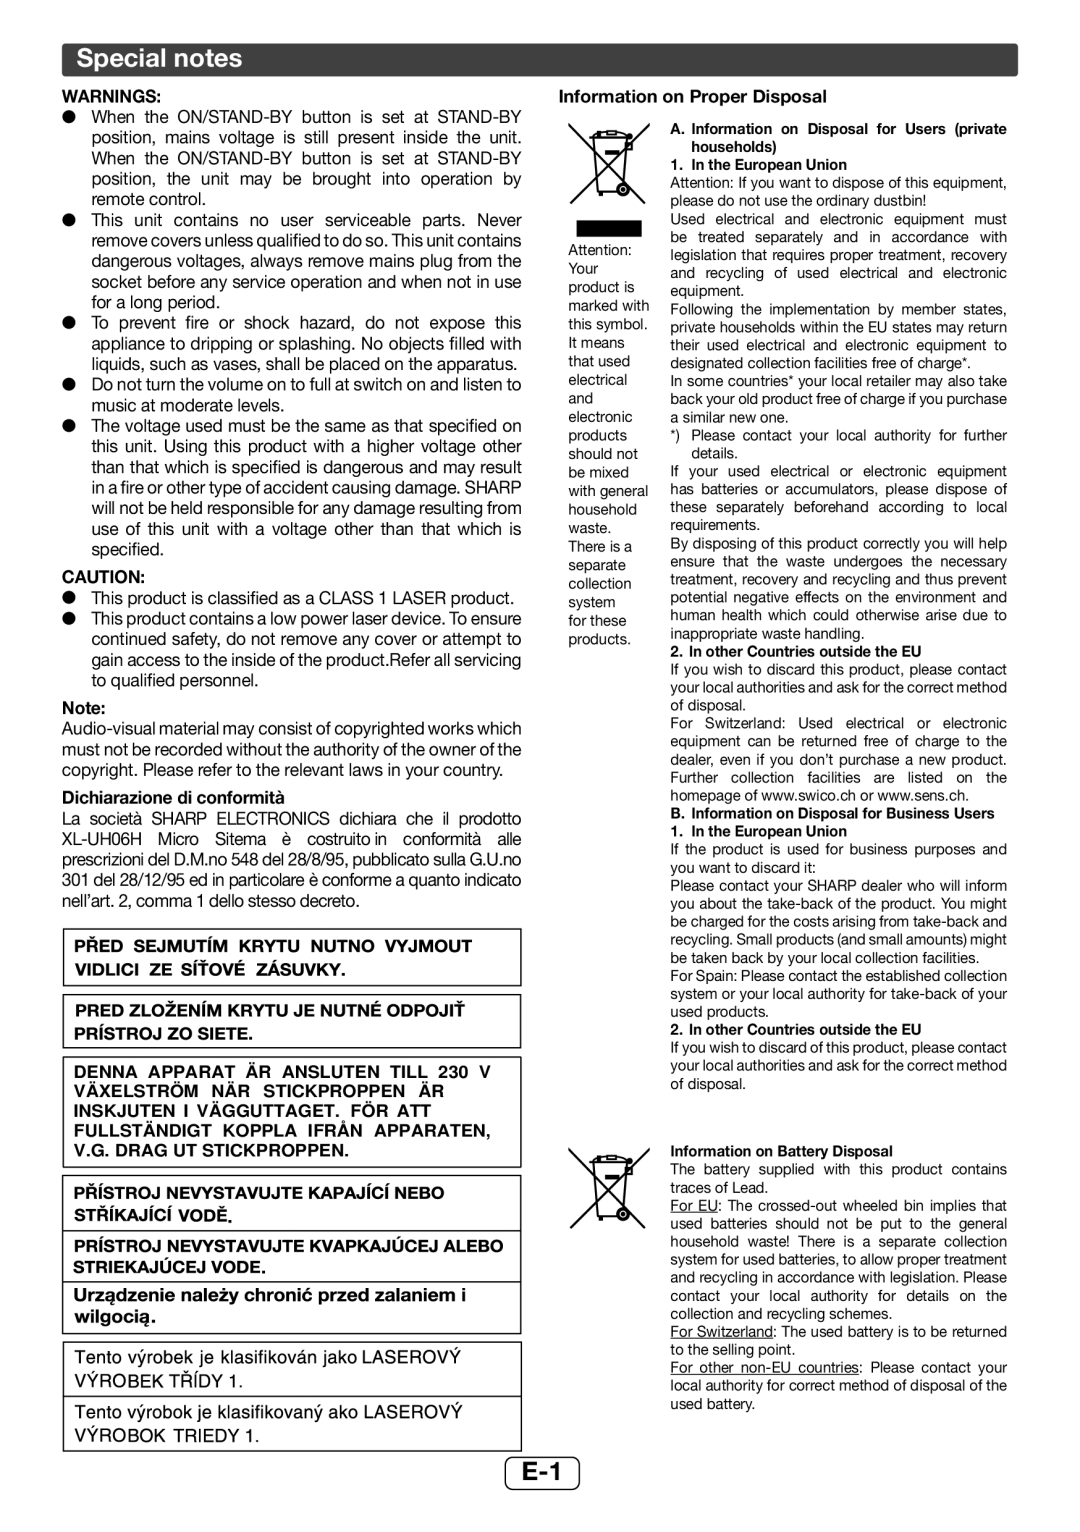 Sharp XL-UH06H operation manual Special notes, Warnings, Information on Proper Disposal, Dichiarazione di conformità 